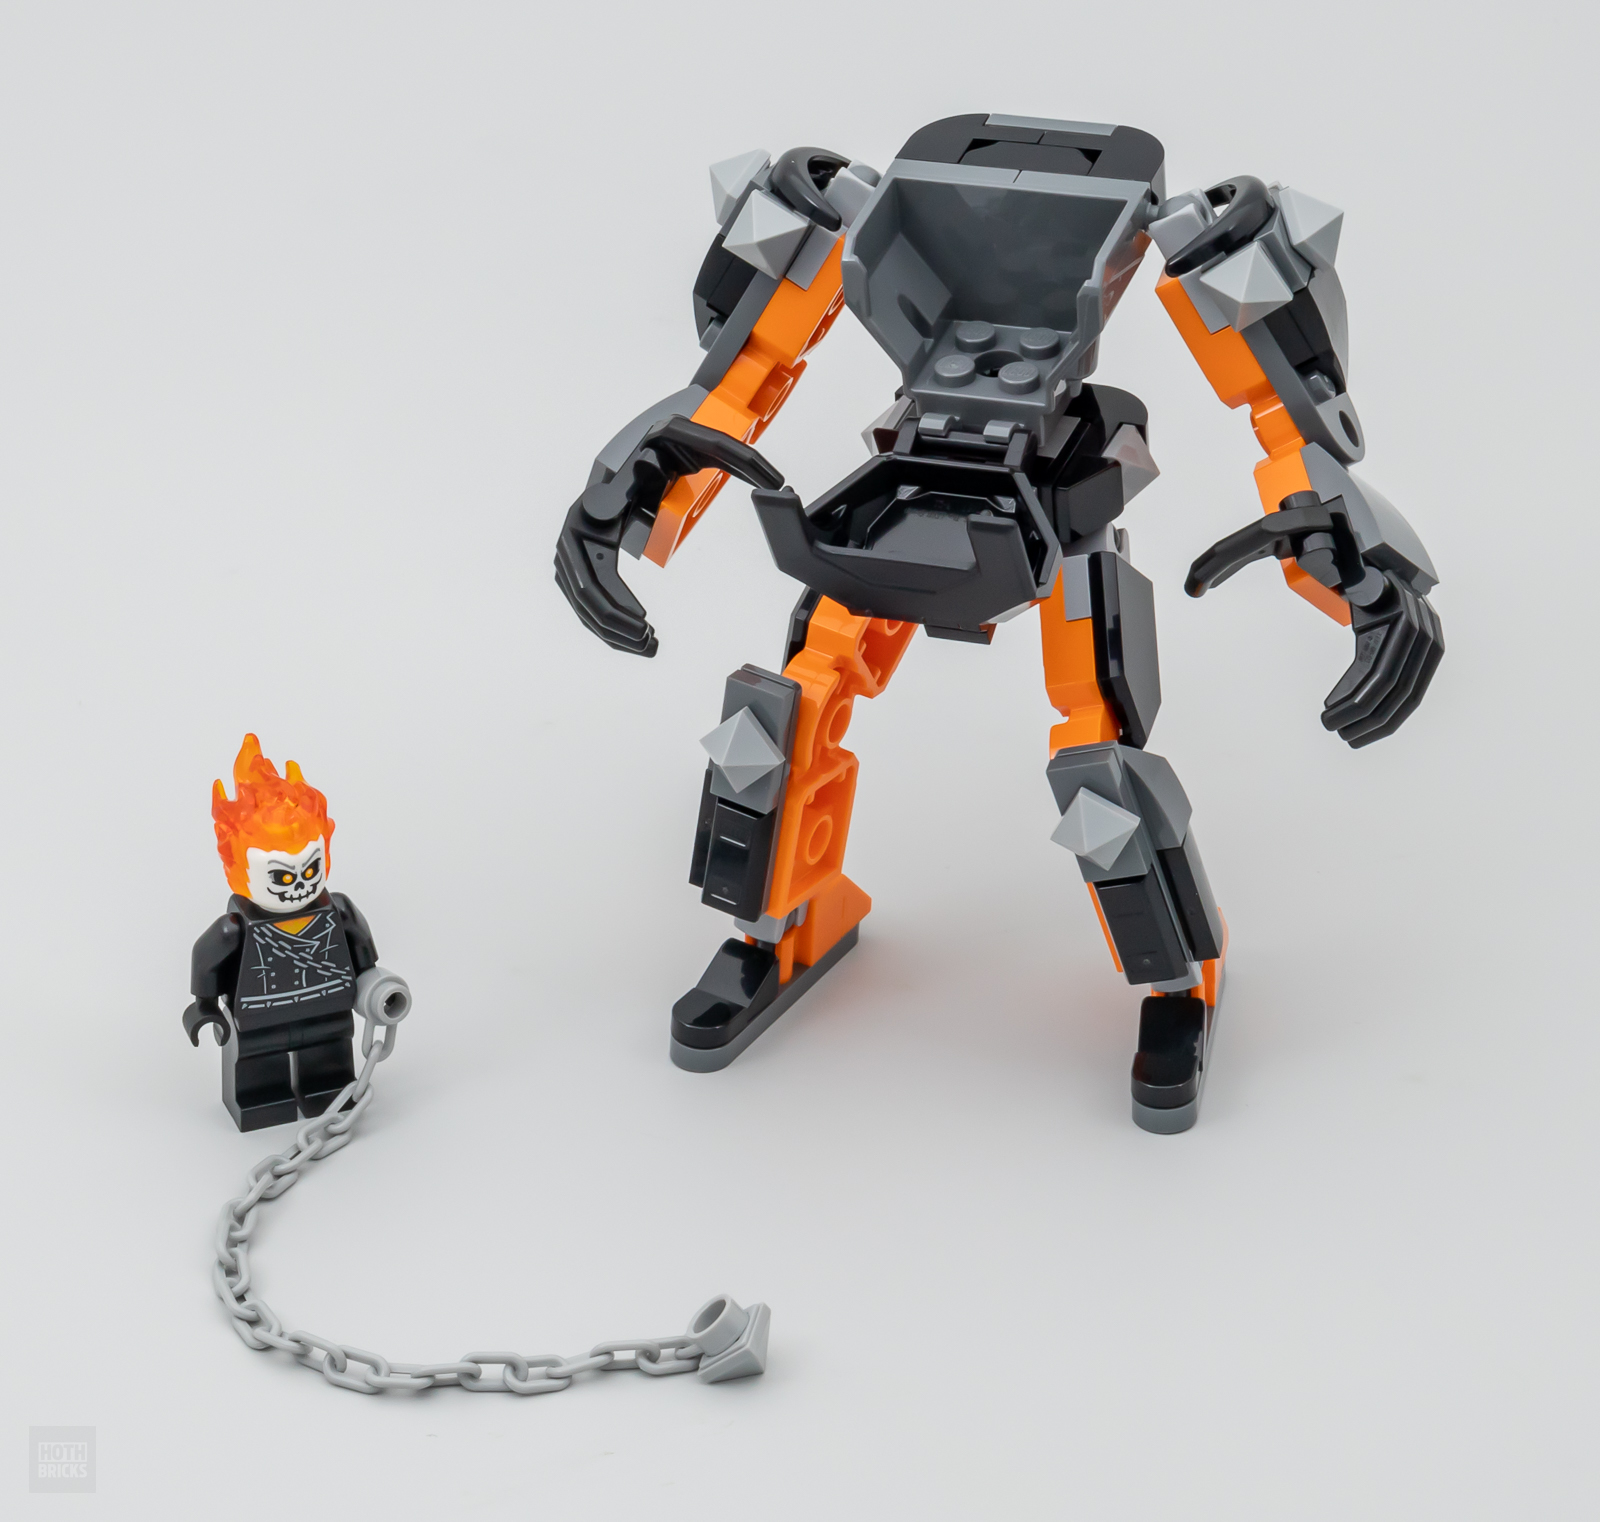 LEGO Marvel 76245 Le Robot Et La Moto De Ghost Rider, Jouet De